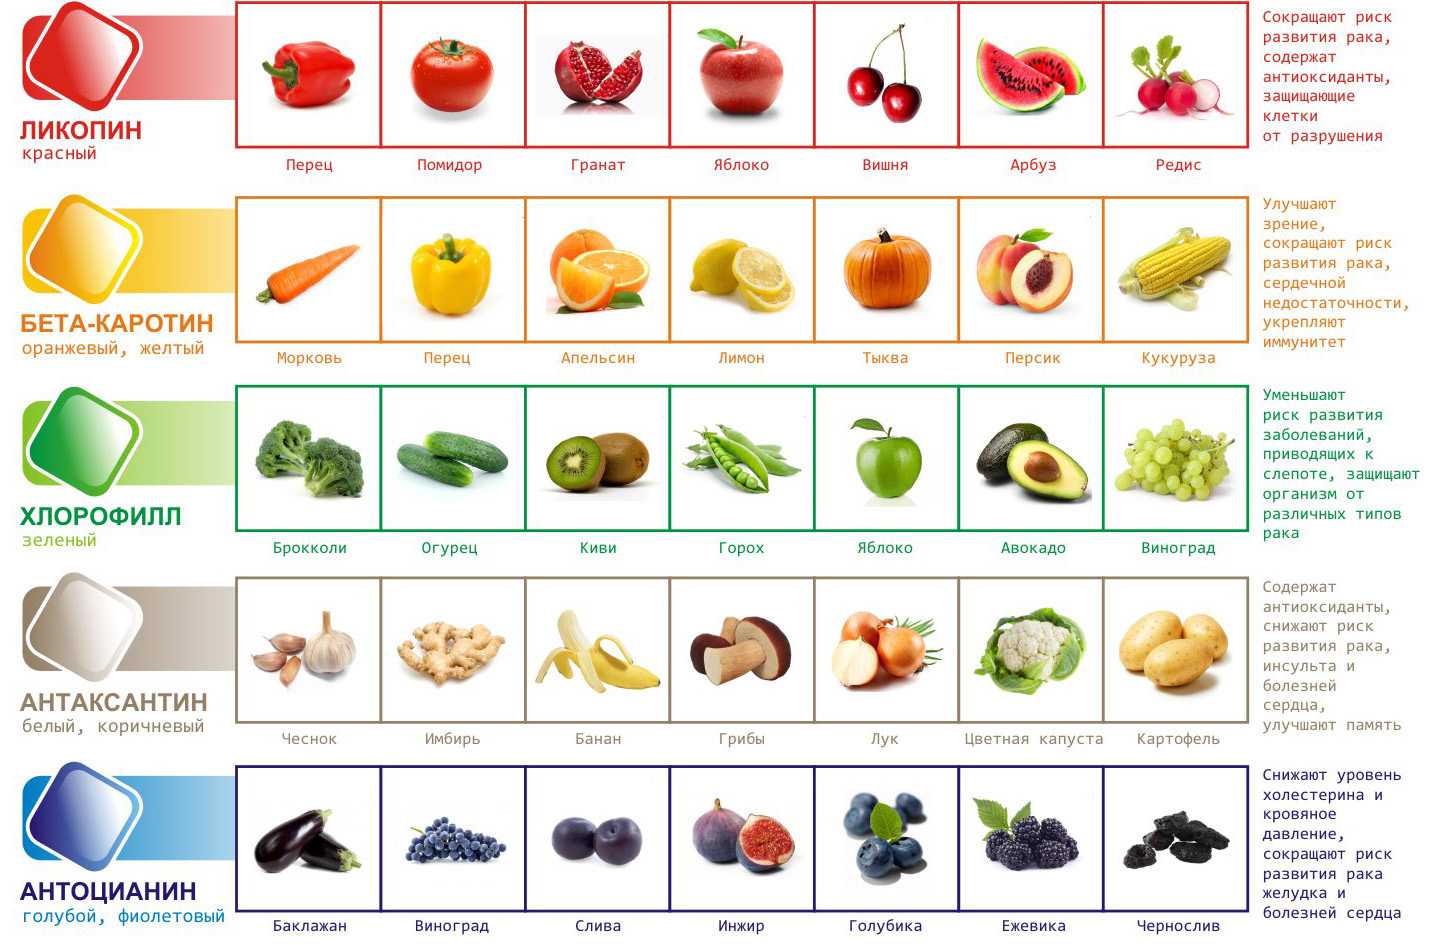 15 самых горьких фруктов (но вкусные)